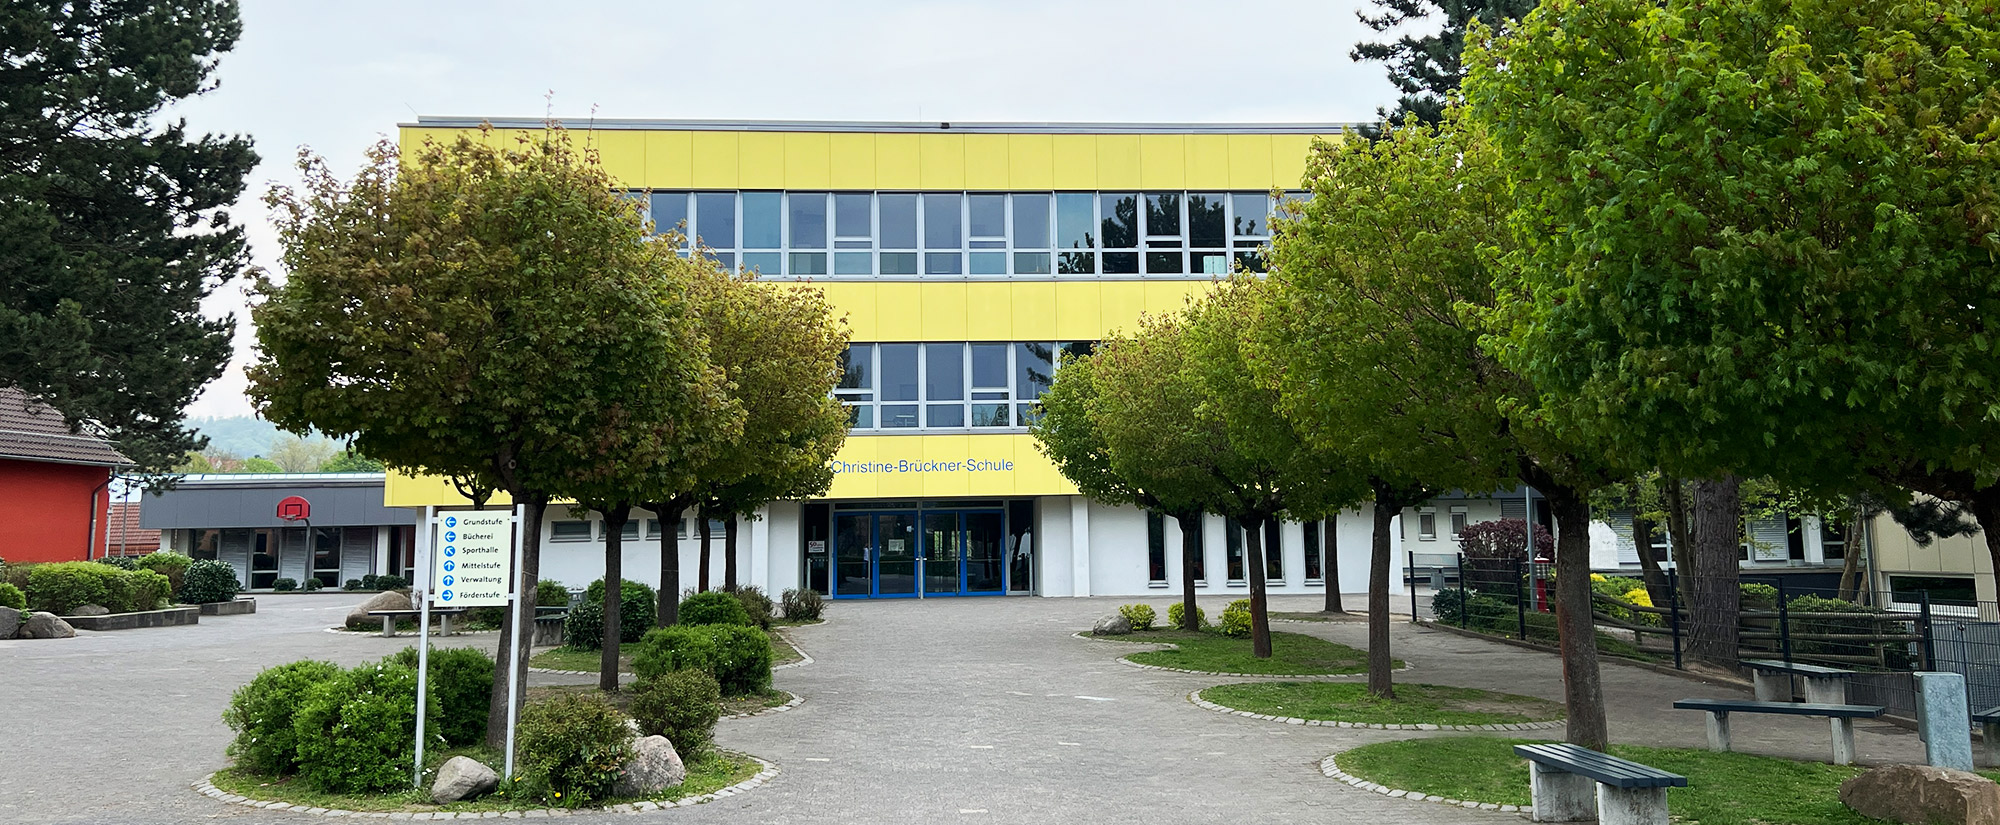 Förderverein Christine-Brückner-Schule e.V.